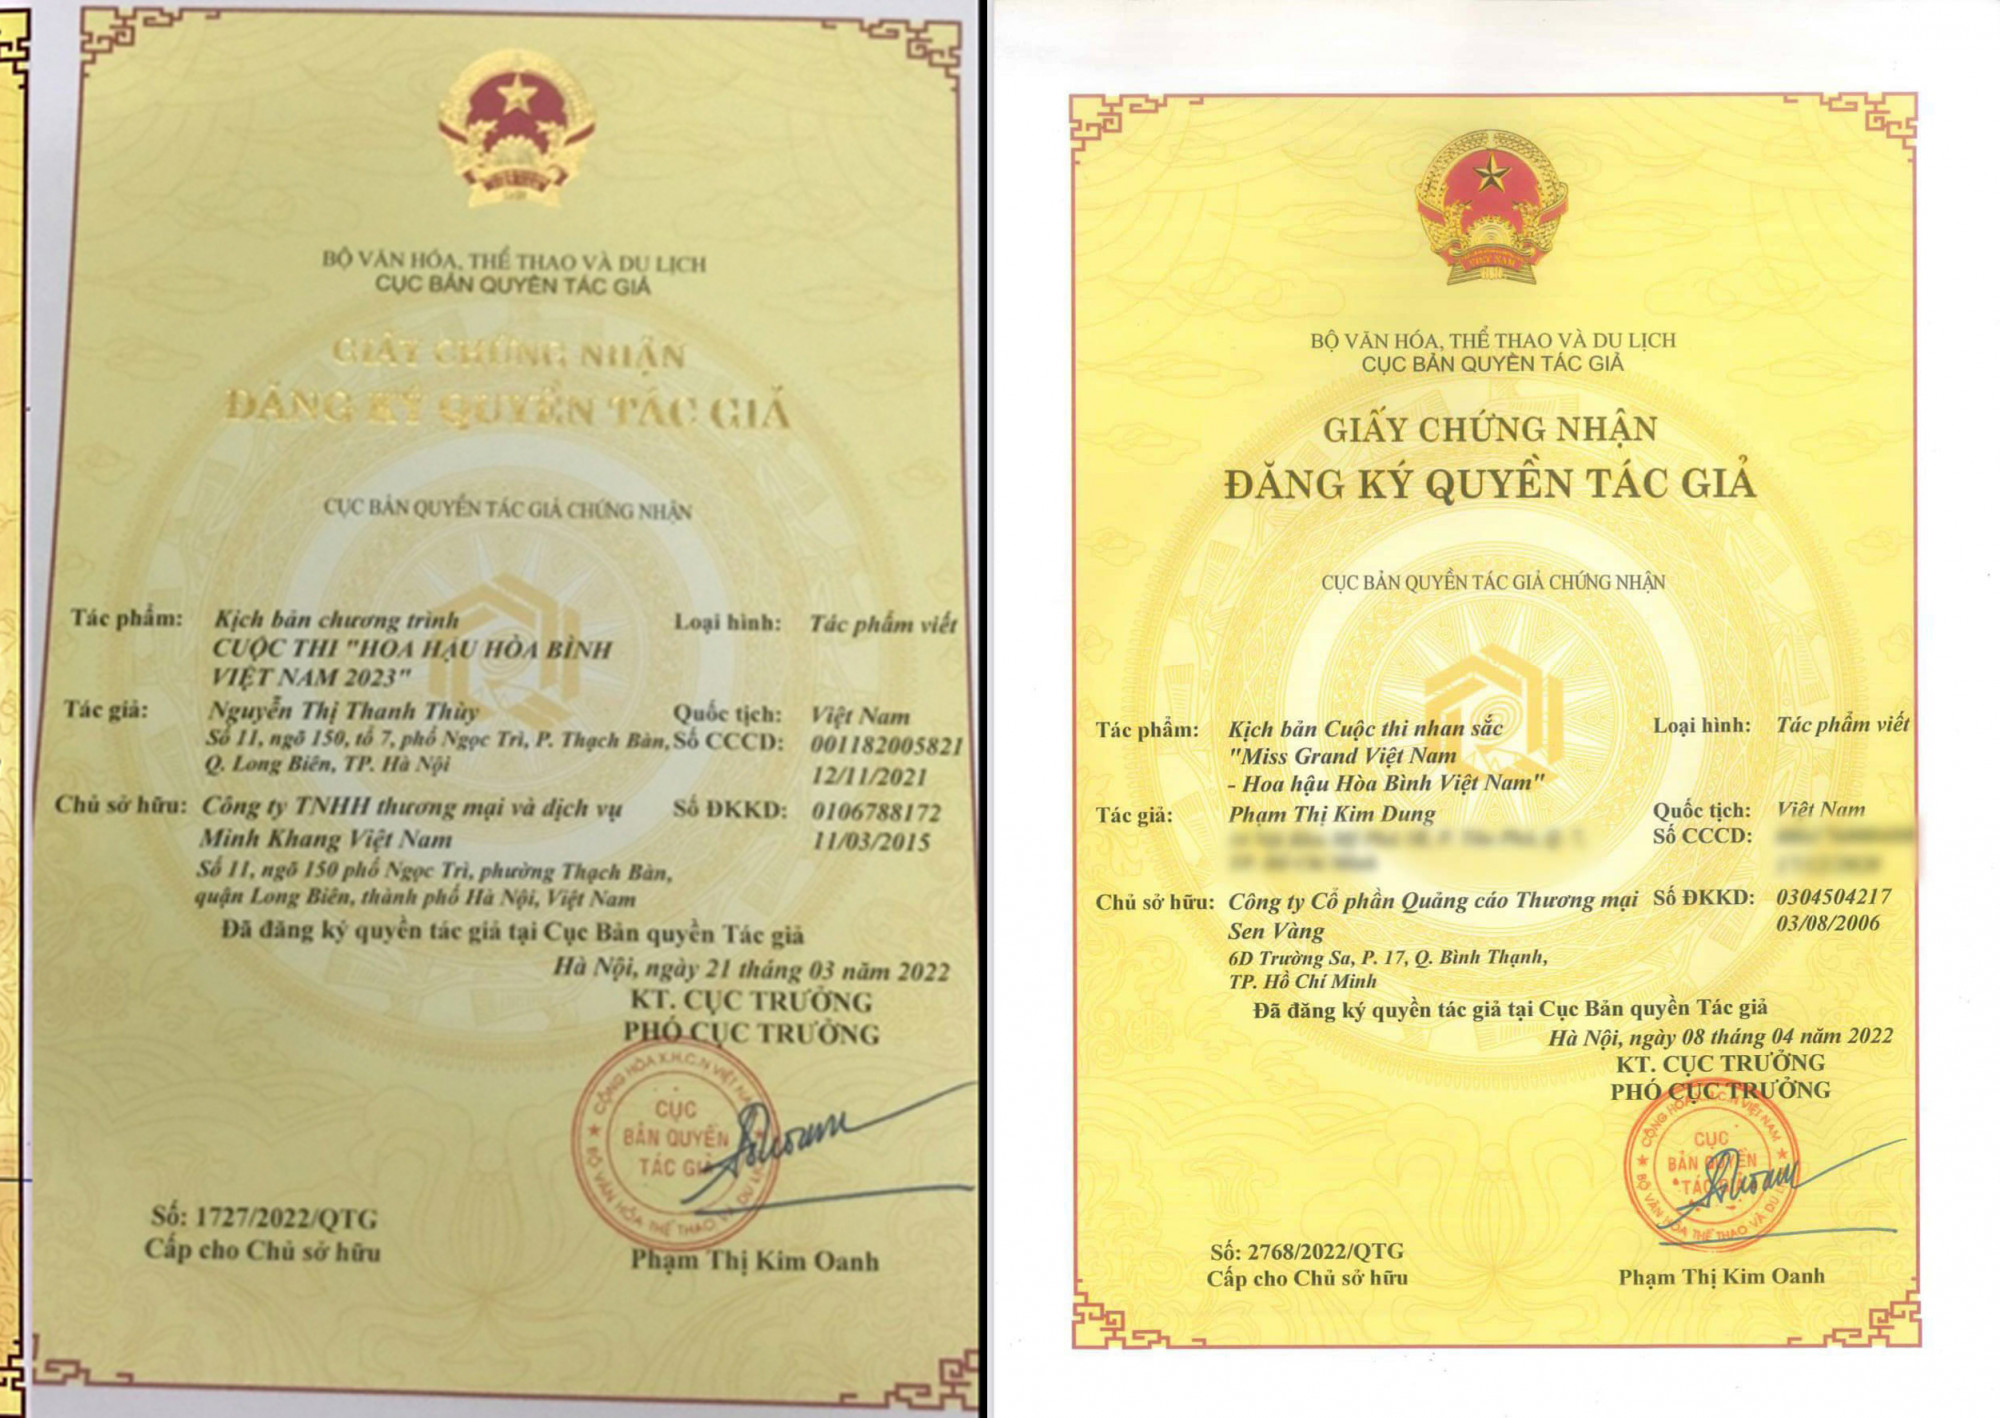 Giấy chứng nhận bản quyền tác giả Cục Bản quyền tác giả cấp lần lượt cho công ty Minh Khang và công ty Sen Vàng